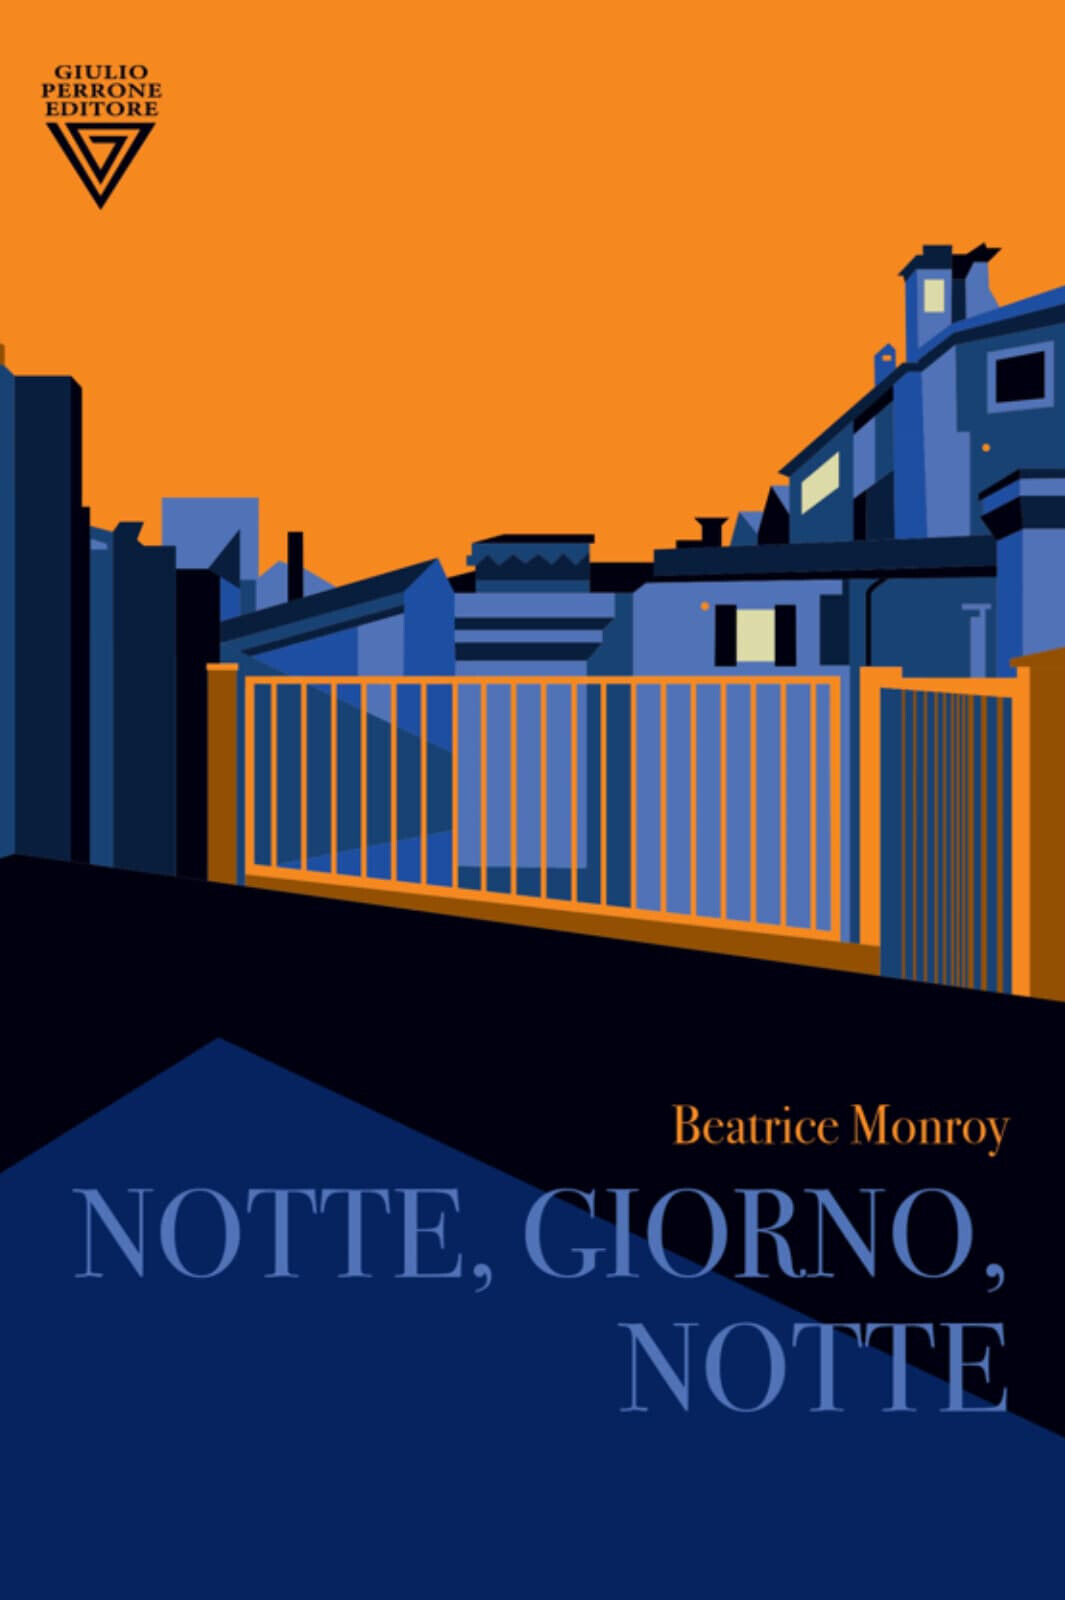 Notte, giorno, notte di Beatrice Monroy - Perrone, 2022